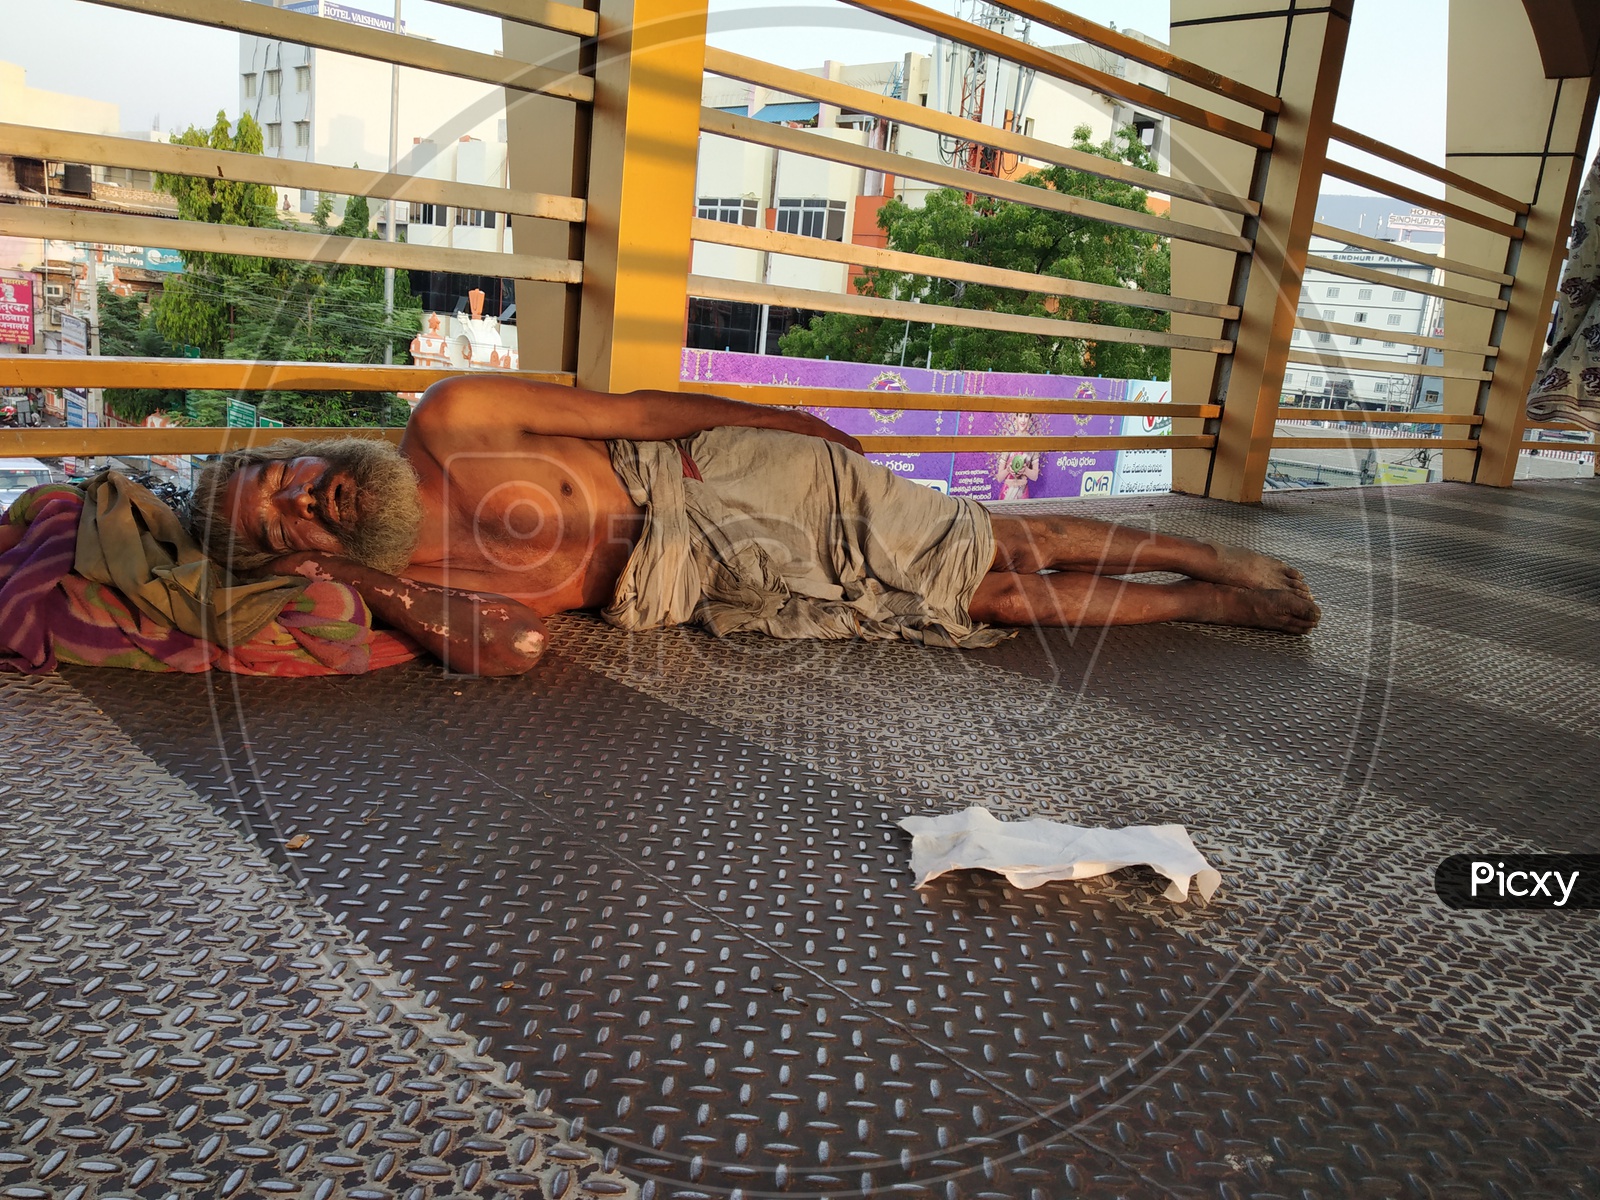 Indian beggar sleeping on the floor